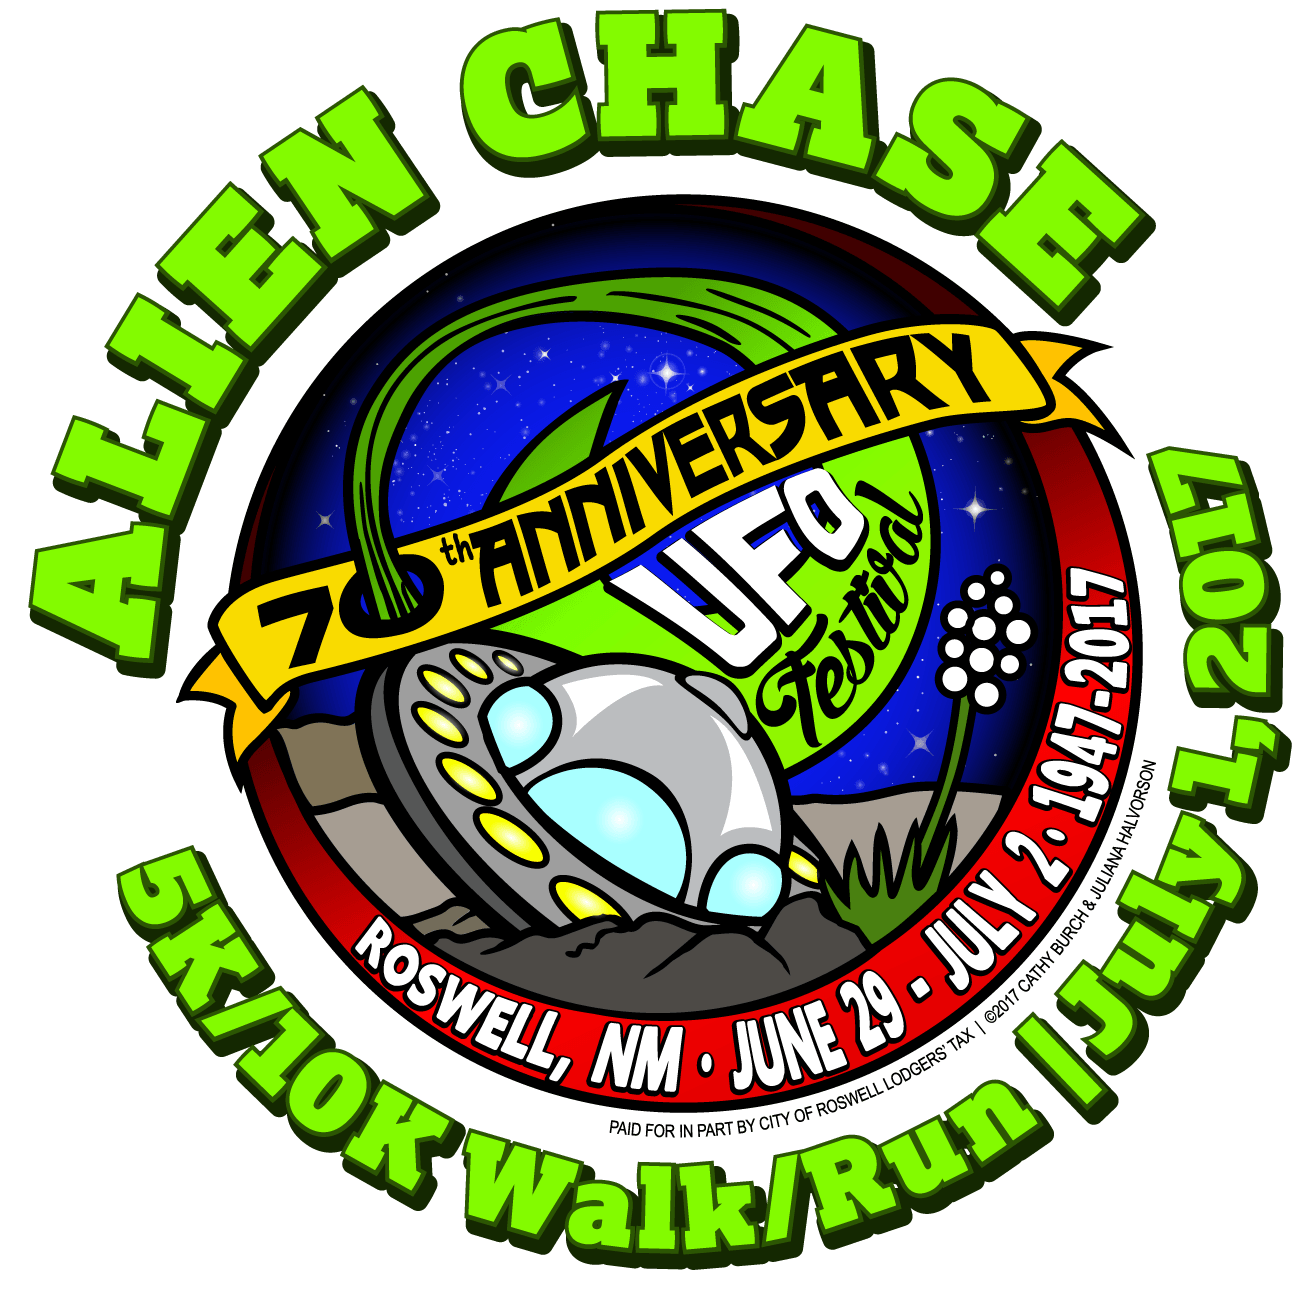 Roswell Alien Chase logo on RaceRaves